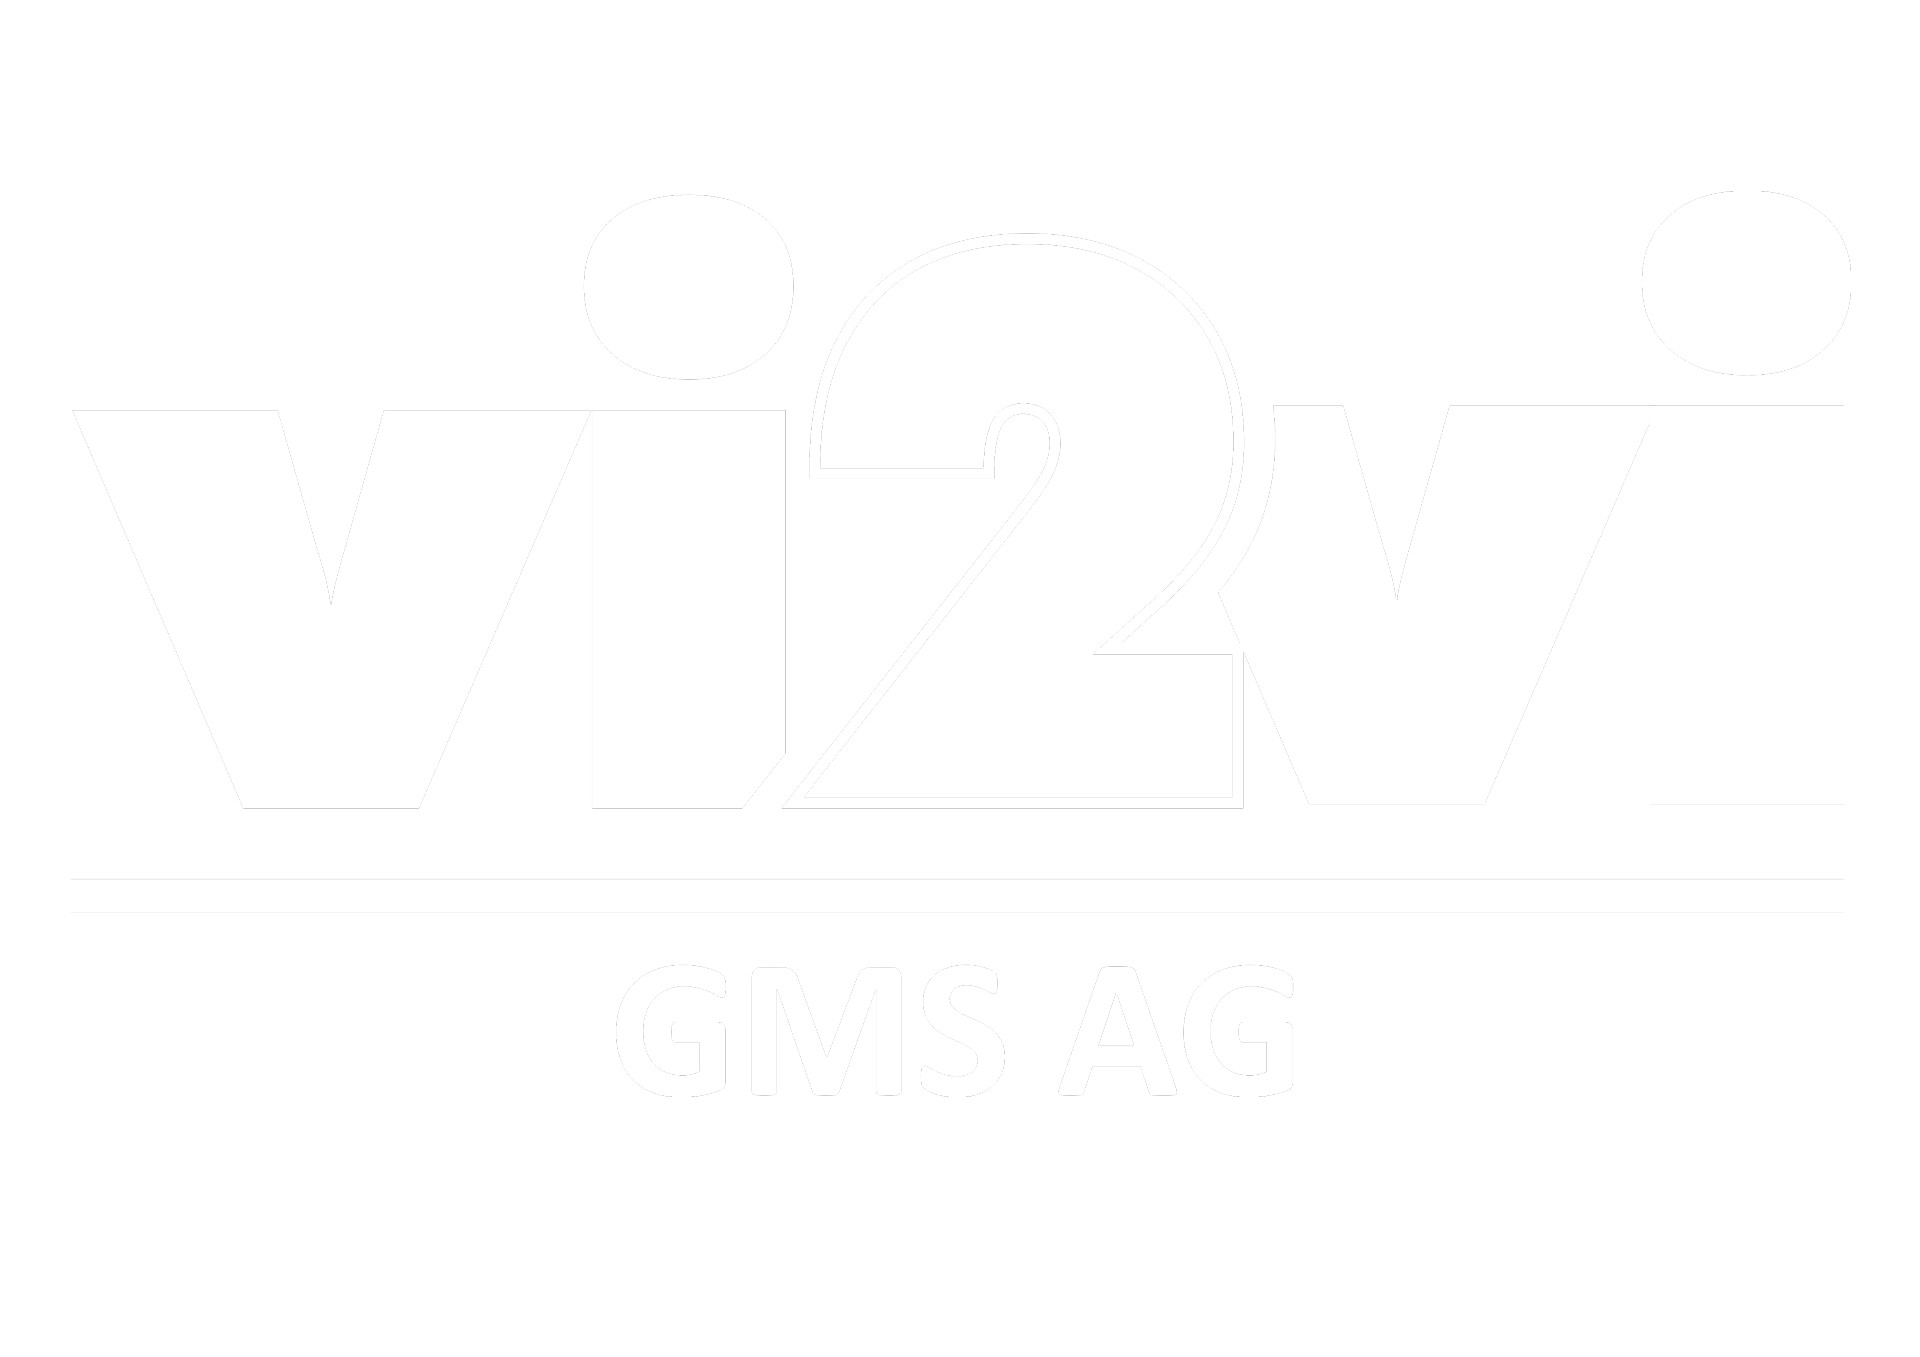 vi2vi GMS AG